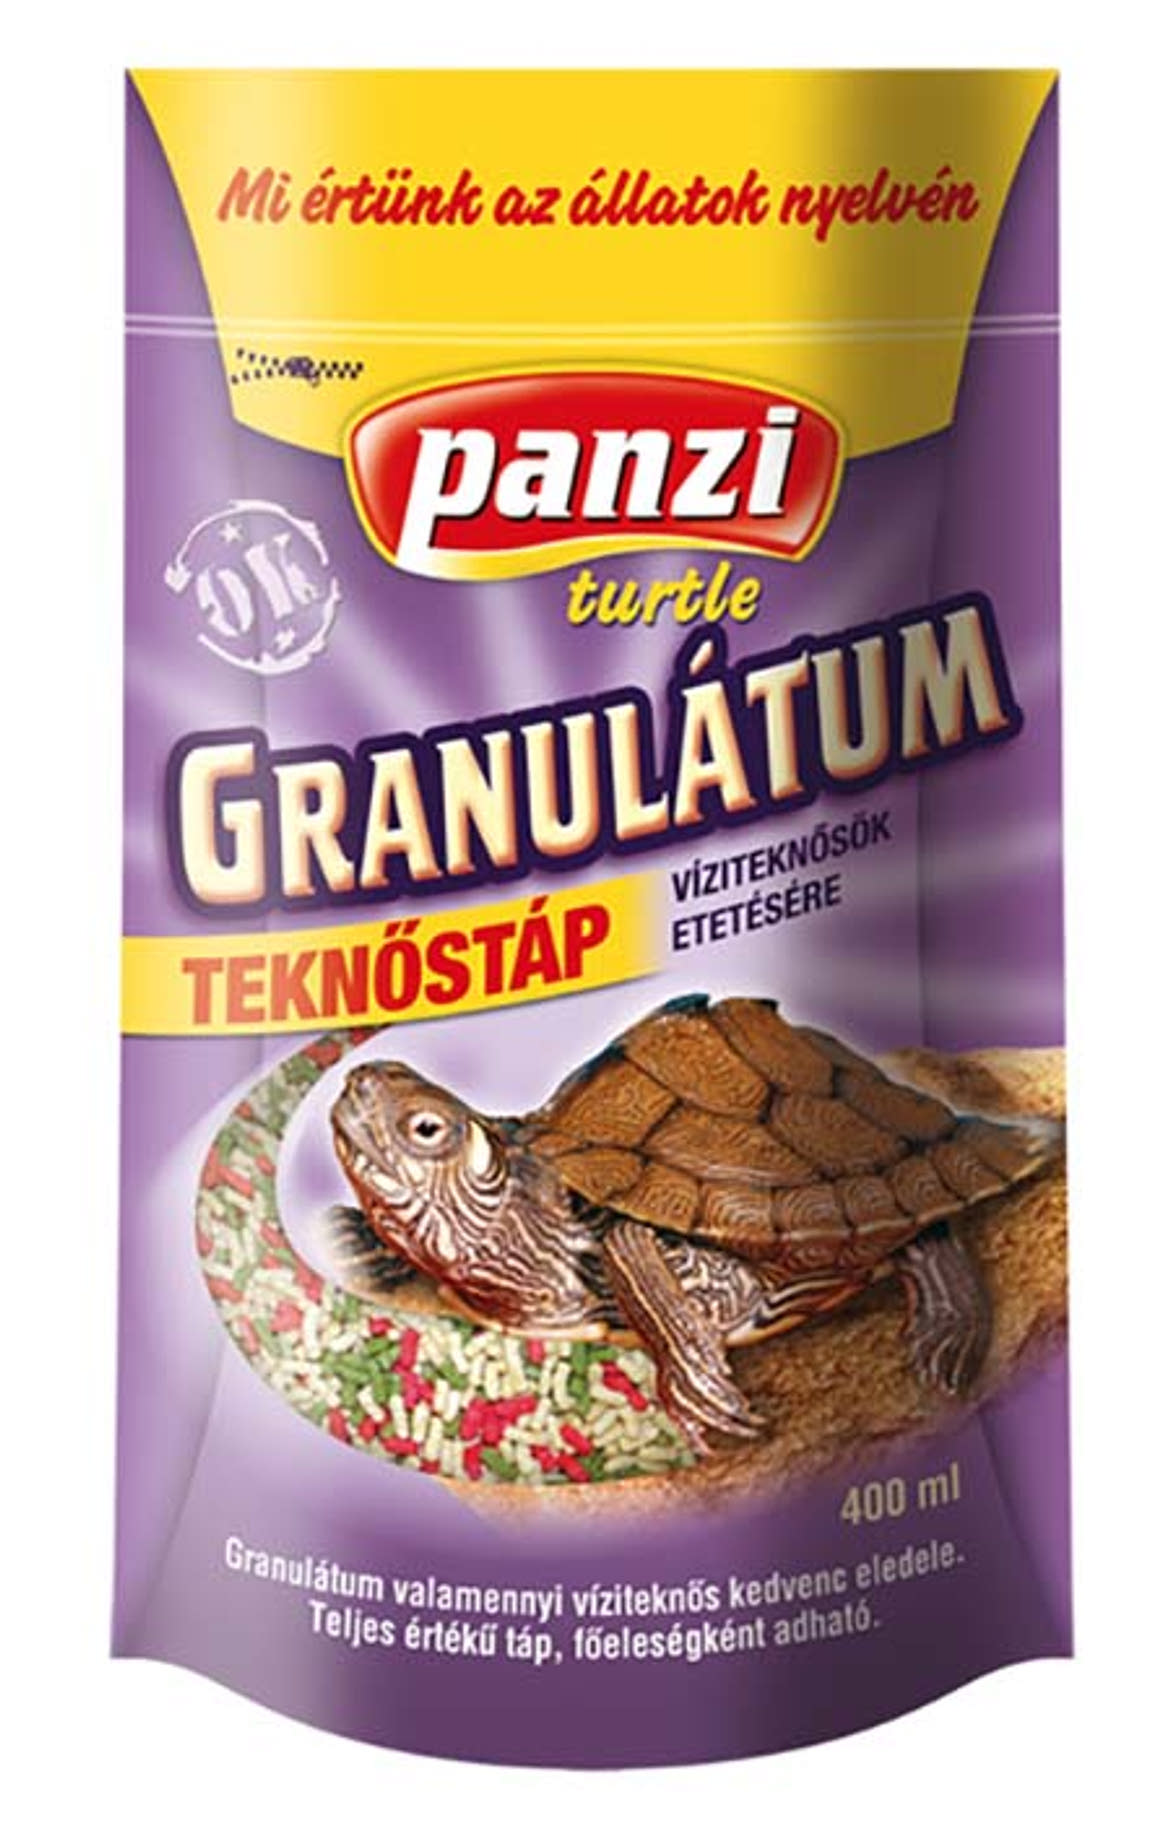 Panzi eledel teknősöknek granulátum